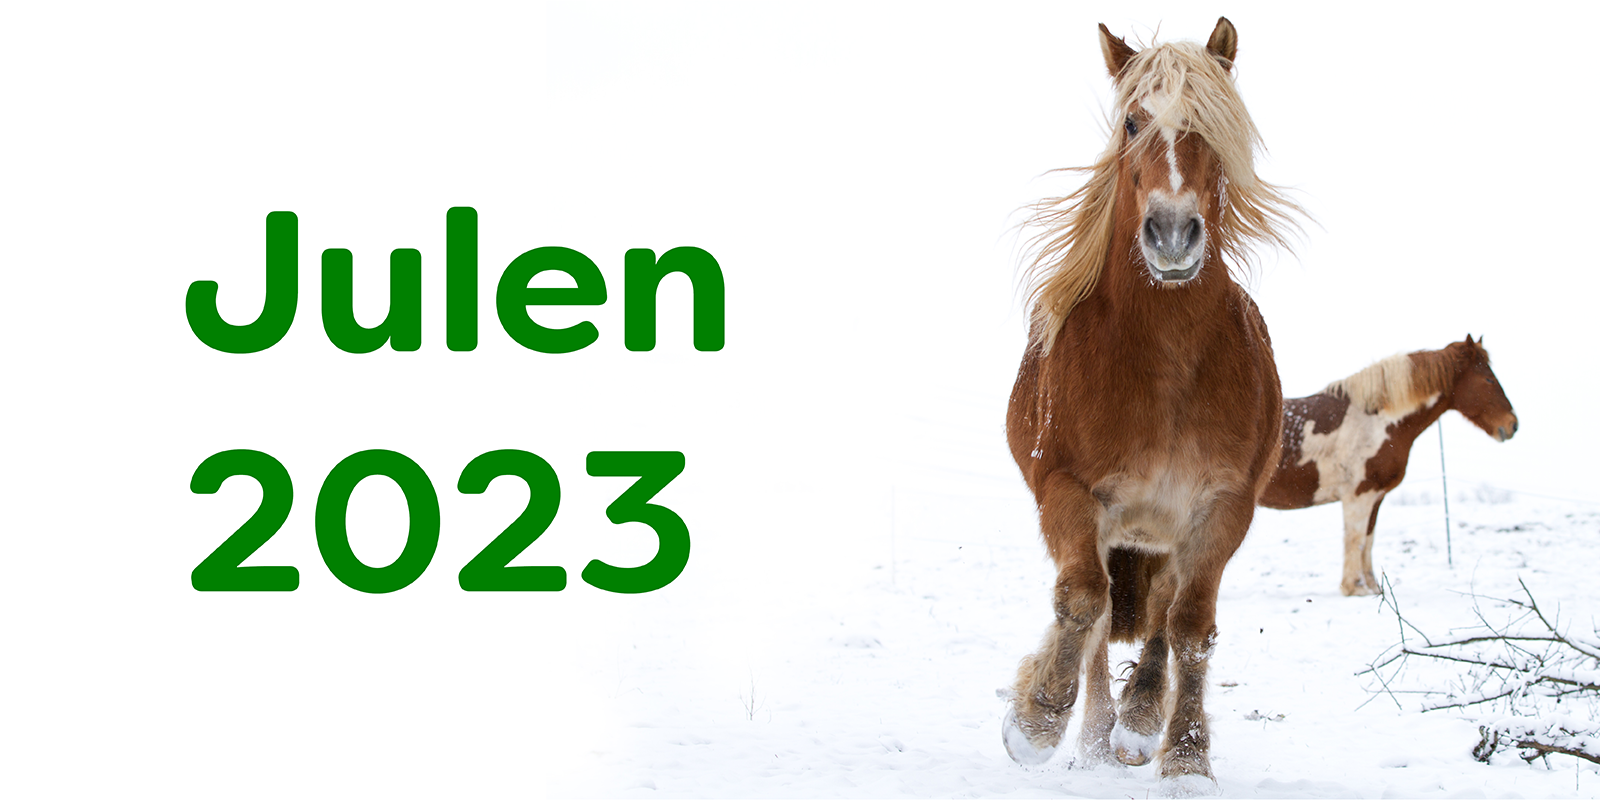 Julen 2023 - to heste på en mark med sne